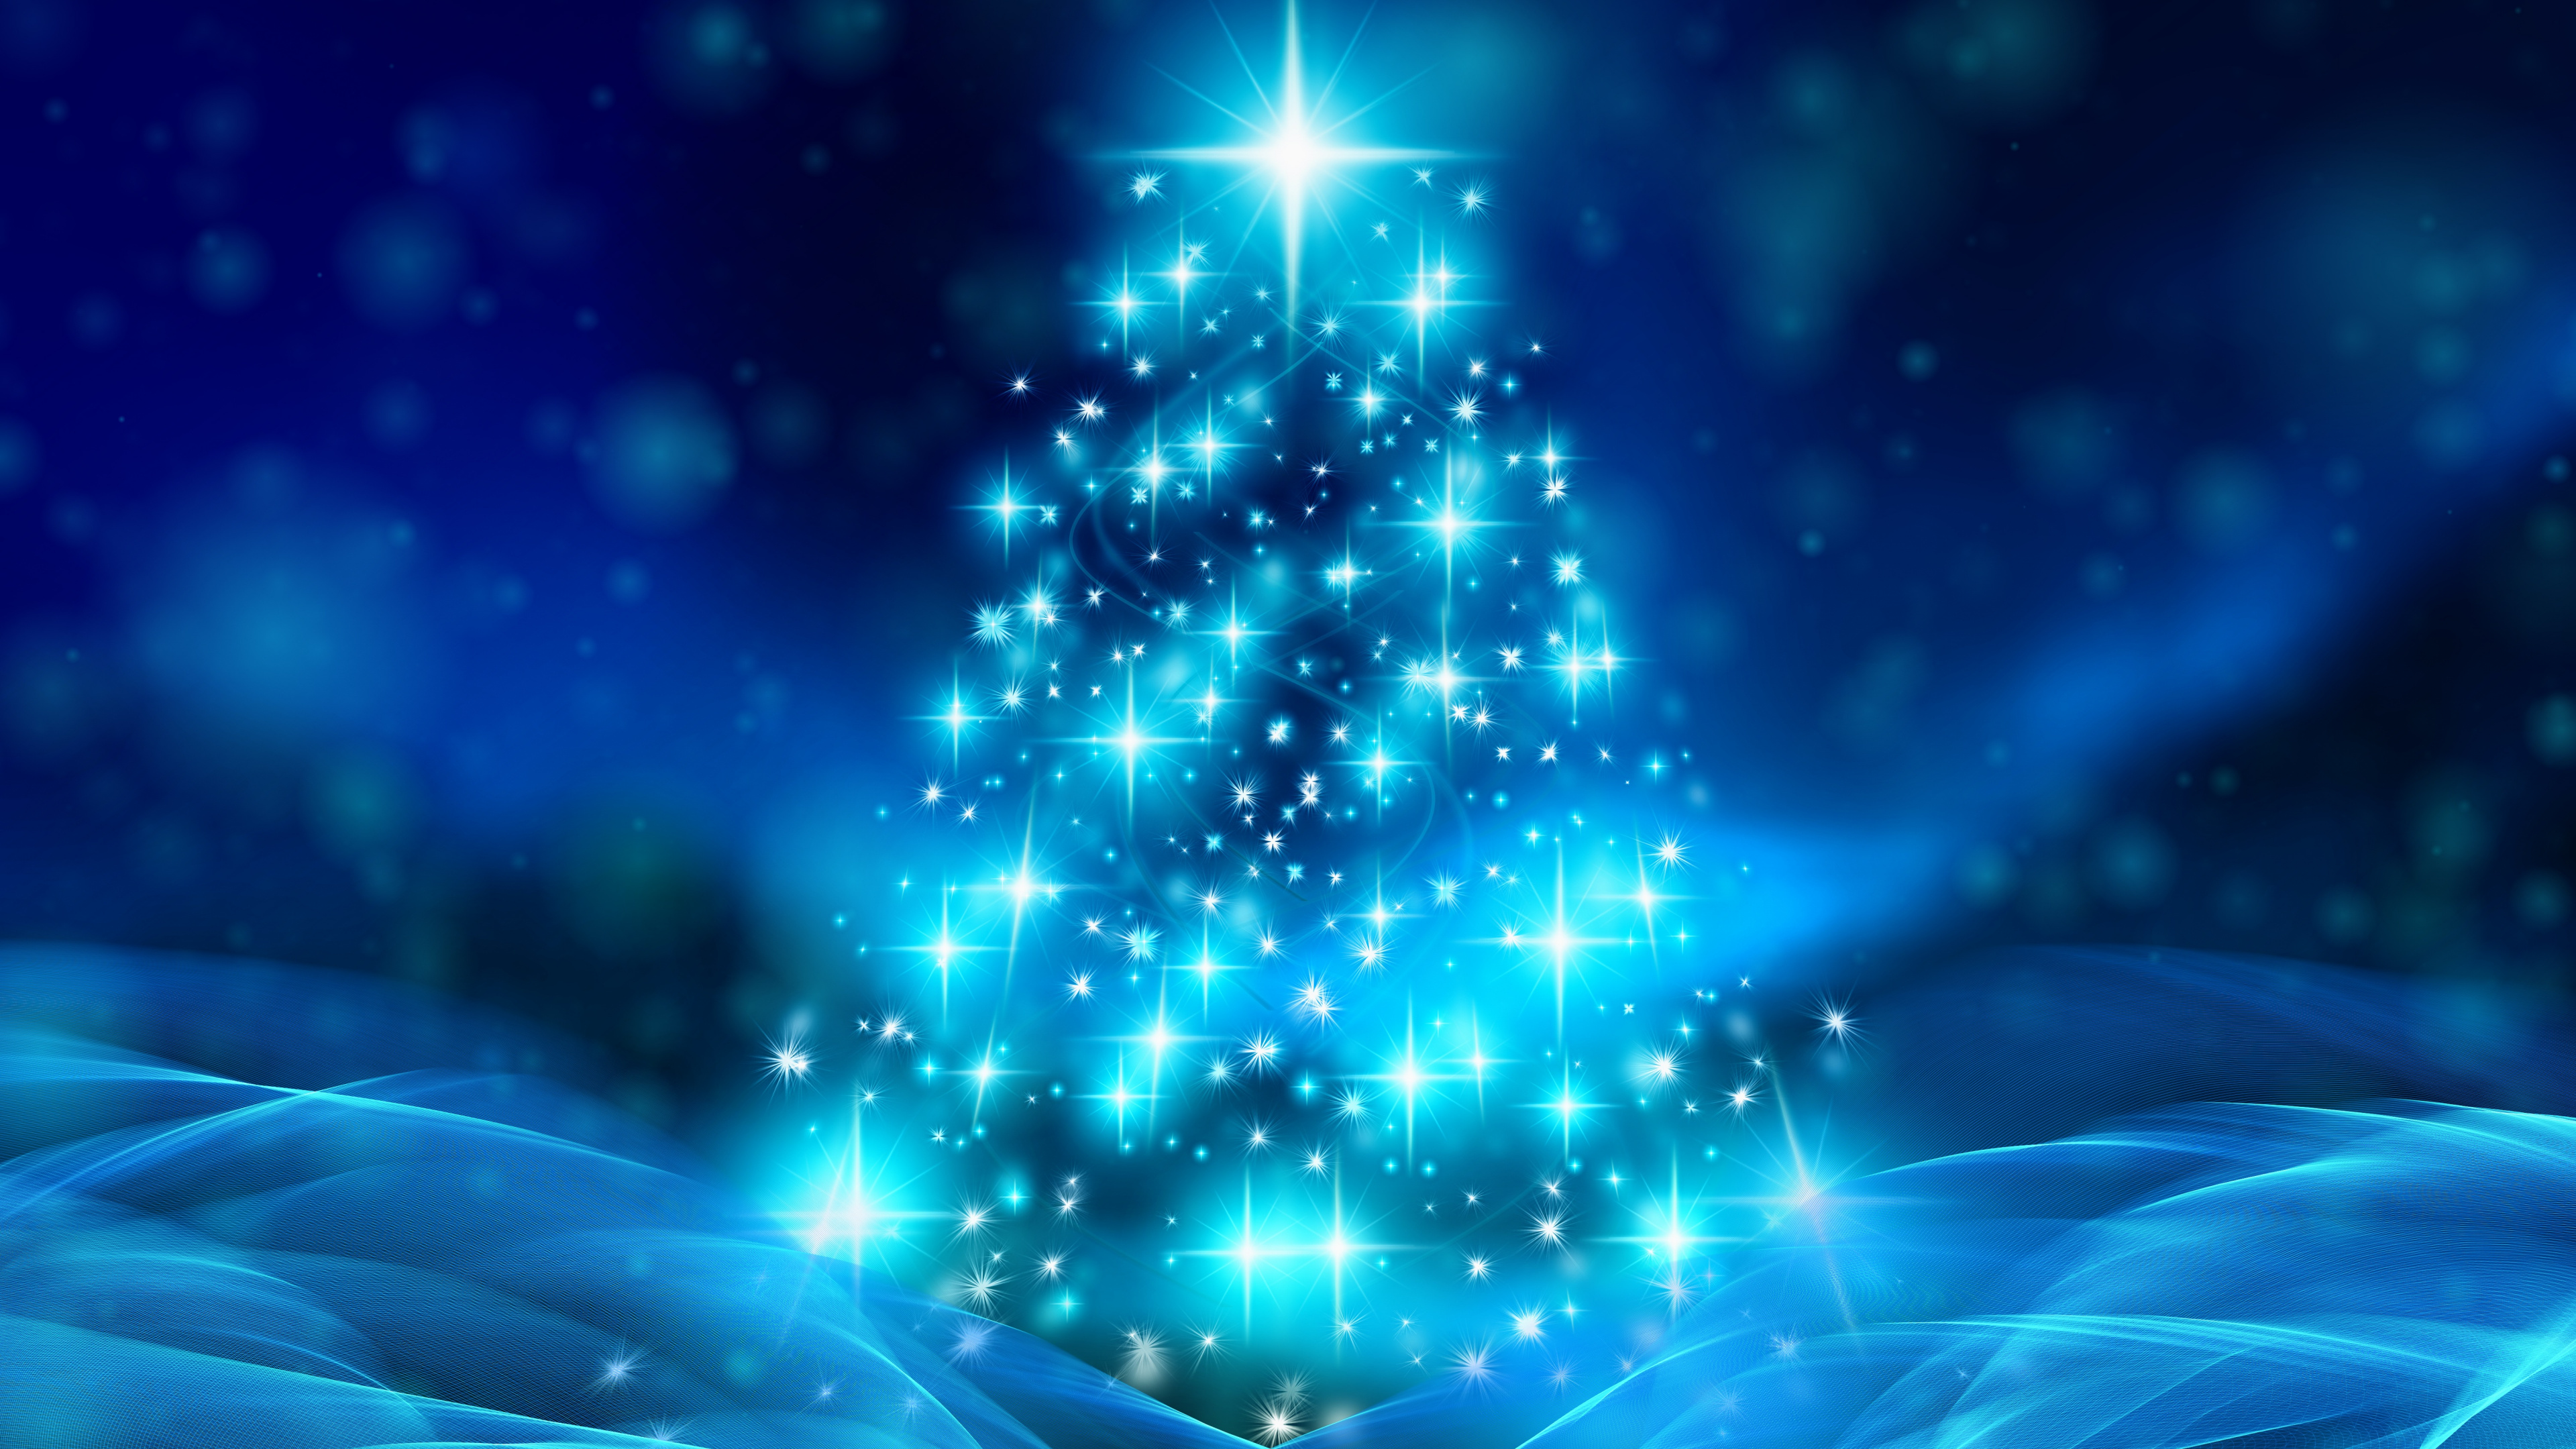 Weihnachten, Weihnachtsbaum, Weihnachtsdekoration, Blau, Baum. Wallpaper in 3840x2160 Resolution